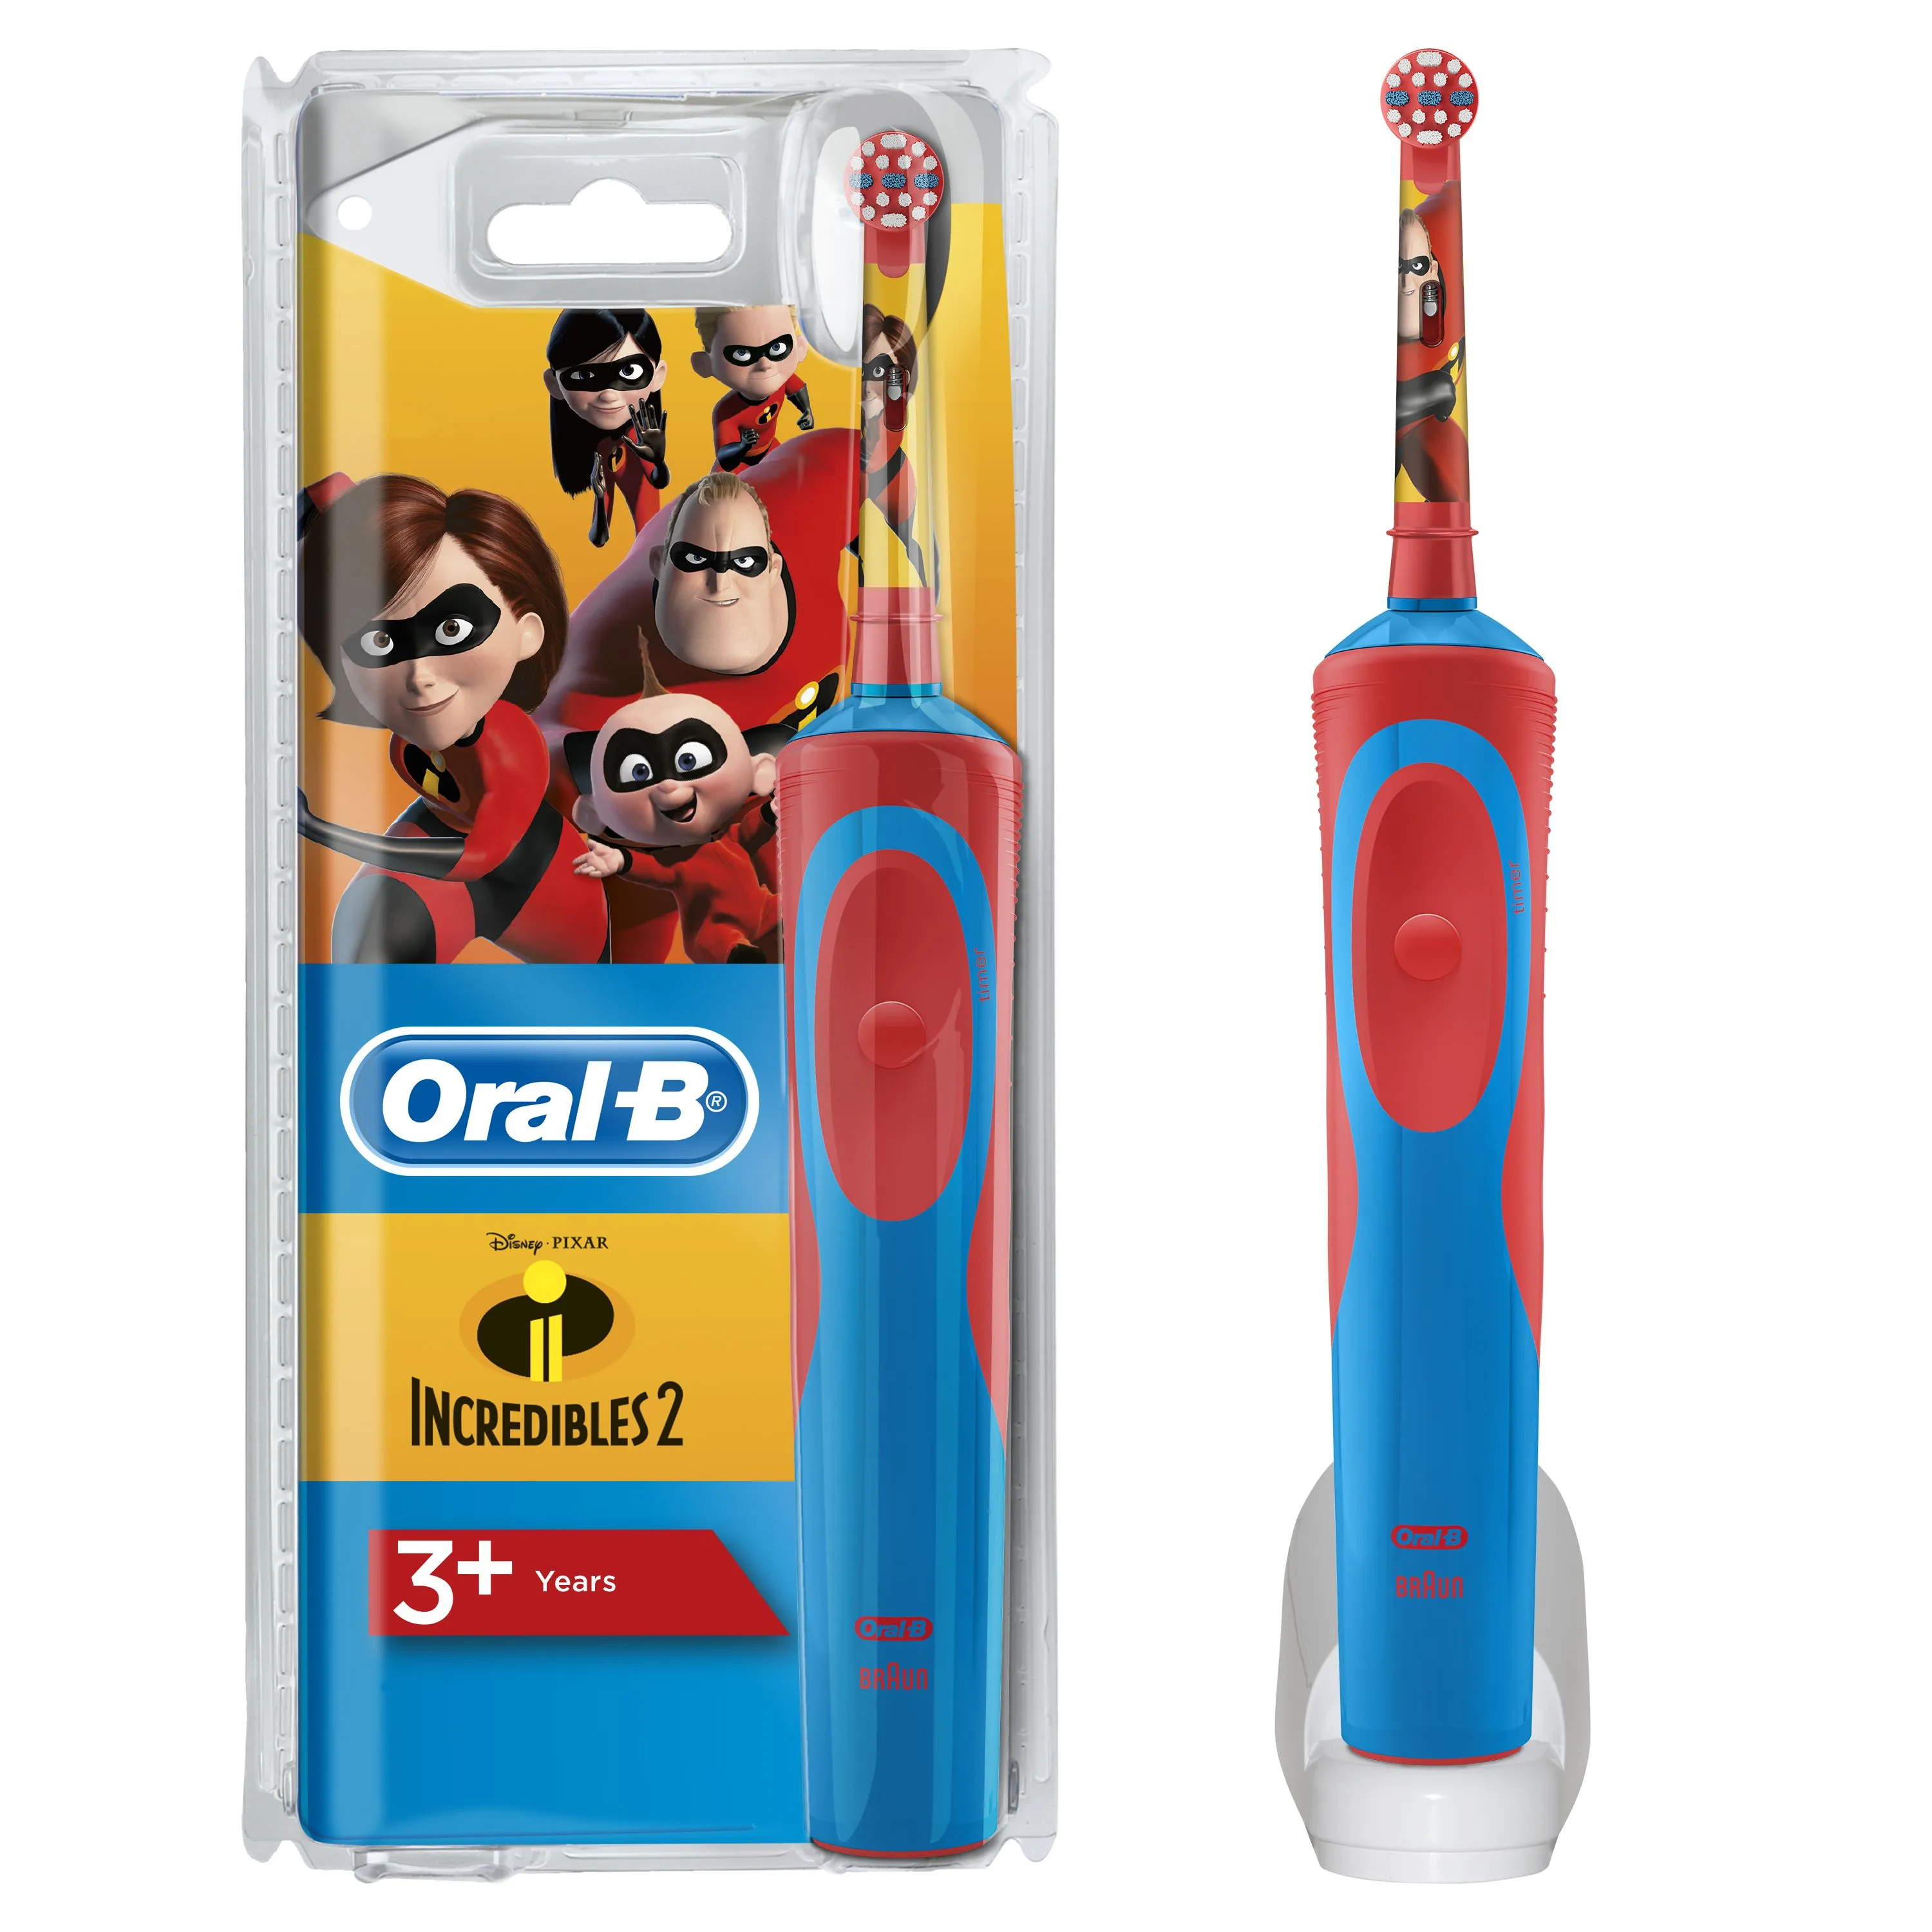 Oral-B Vitality Kids Incredibles 2 dětský elektrický zubní kartáček